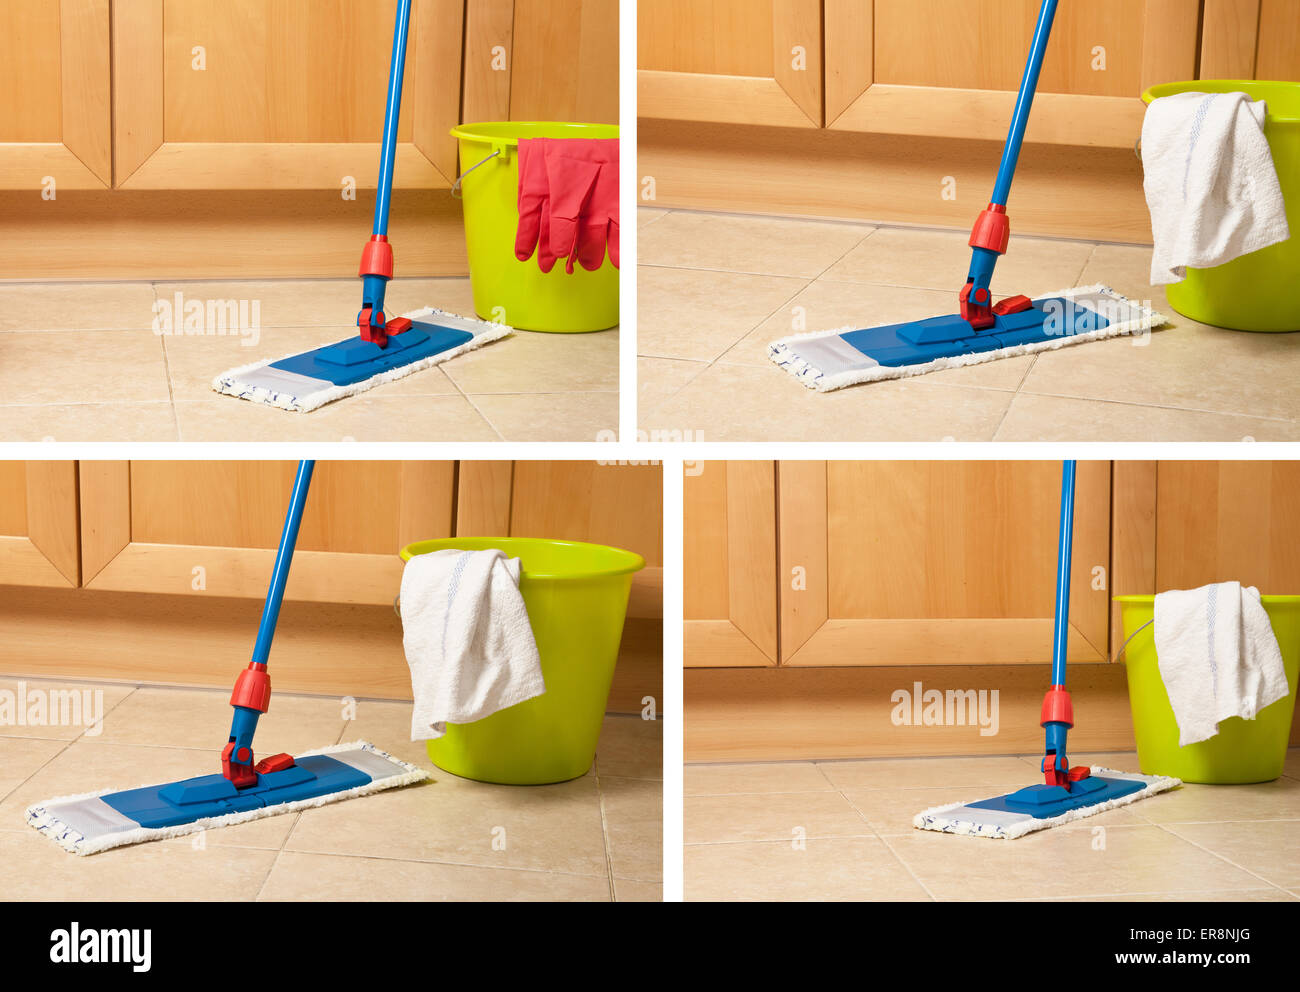 https://c8.alamy.com/comp/ER8NJG/set-of-house-items-for-cleaning-bucket-mop-gloves-near-kitchen-furniture-ER8NJG.jpg